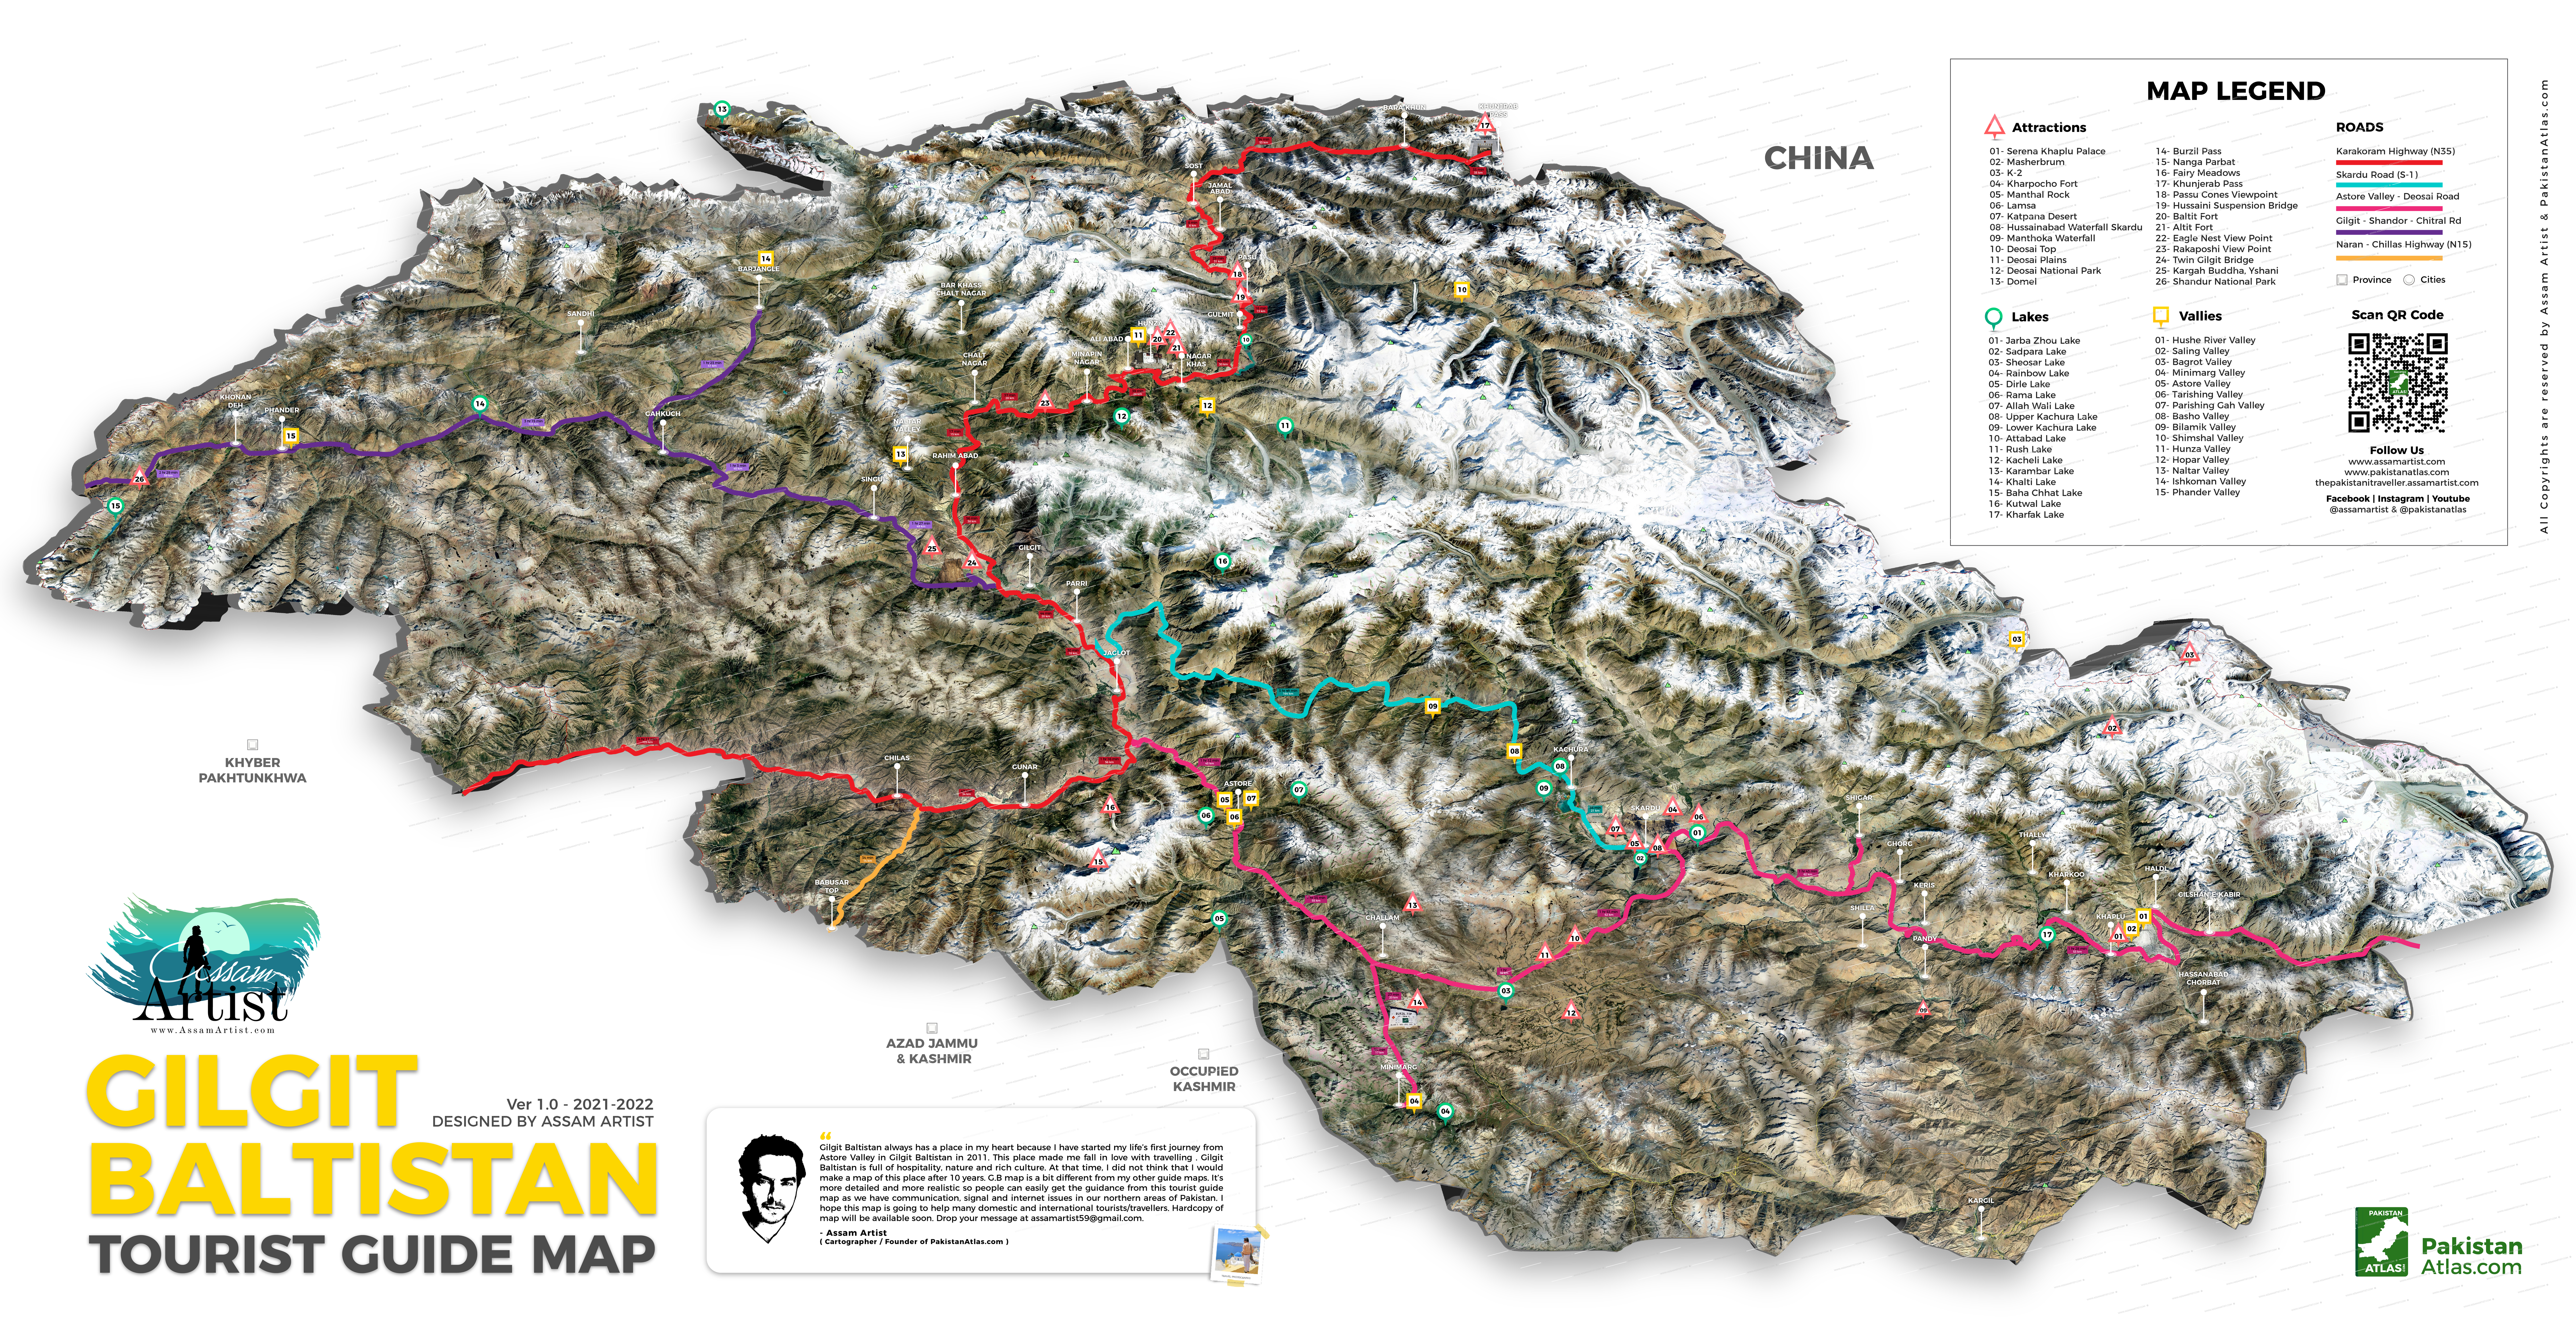 Gilgit Baltistan Northern Area Tourist Guide Map by Assam Artist